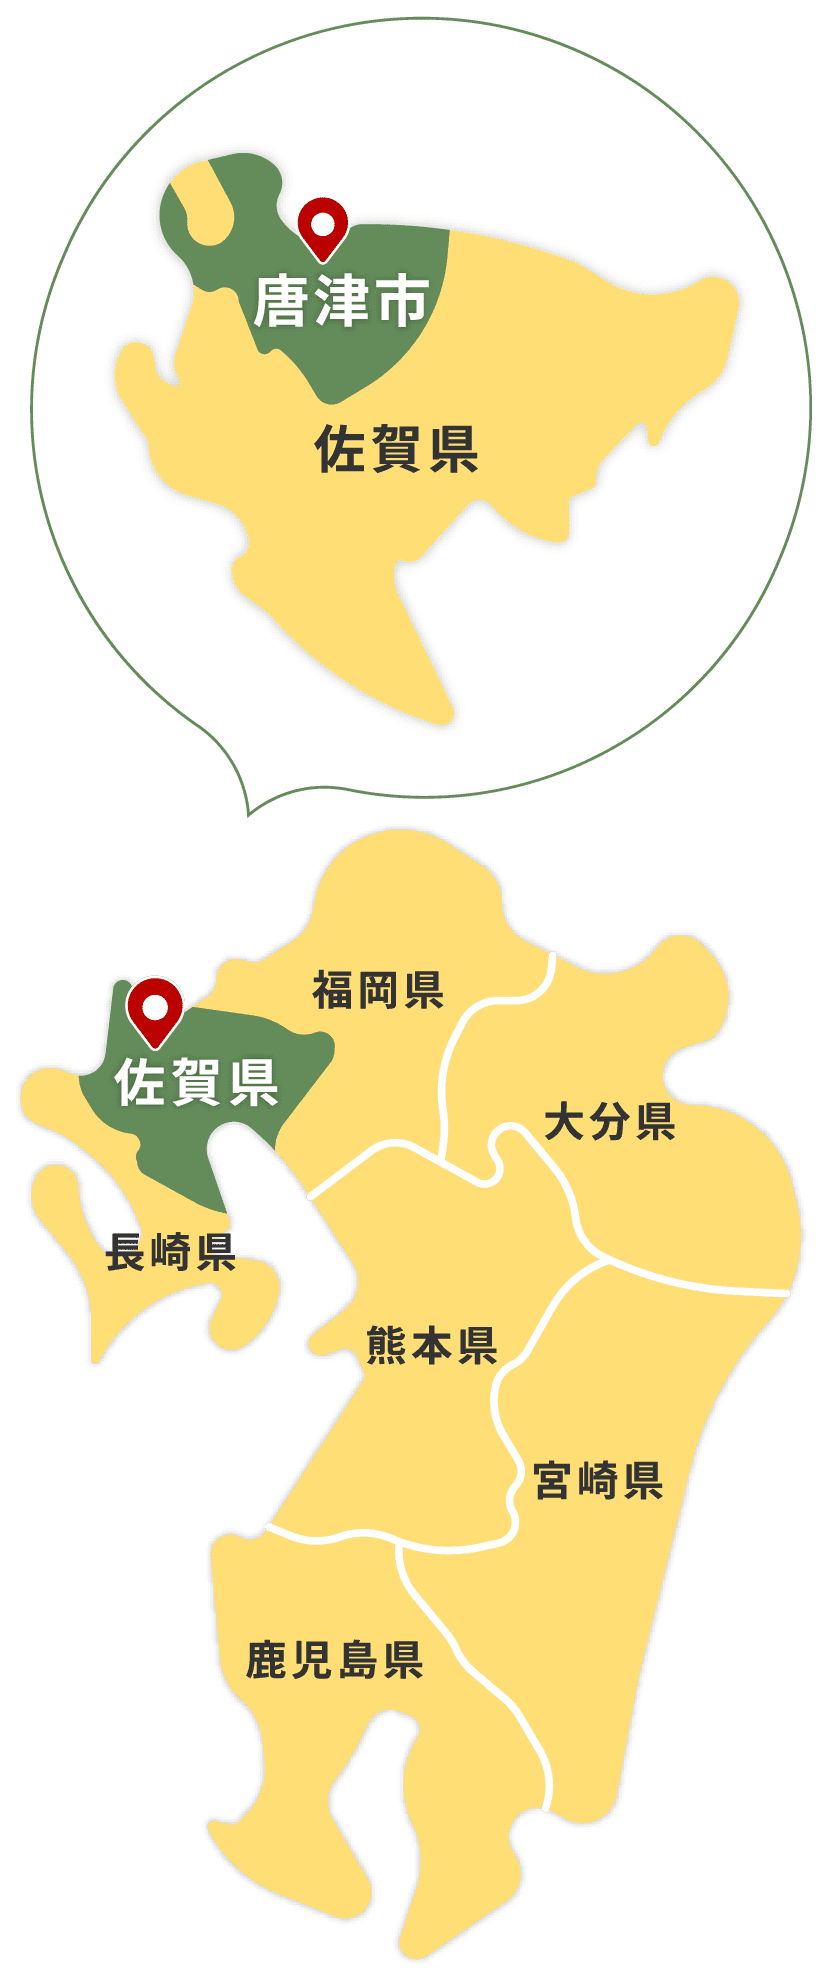 唐津市は、佐賀県の北西に位置し玄界灘に面する市